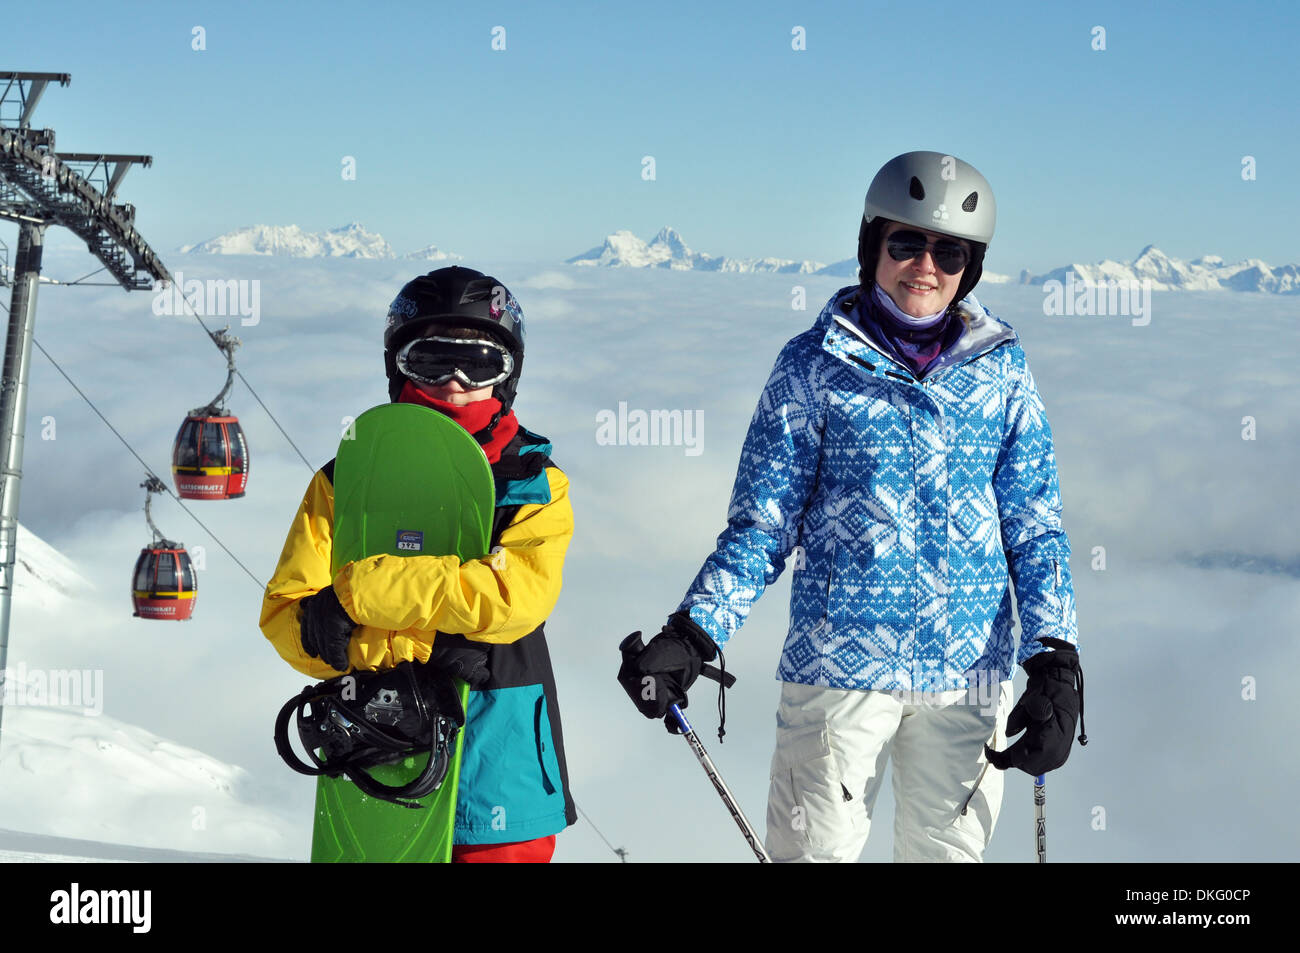 Frère et sœur sur un ski holiday, Kitzsteinhorn, Zell am See, Autriche Banque D'Images